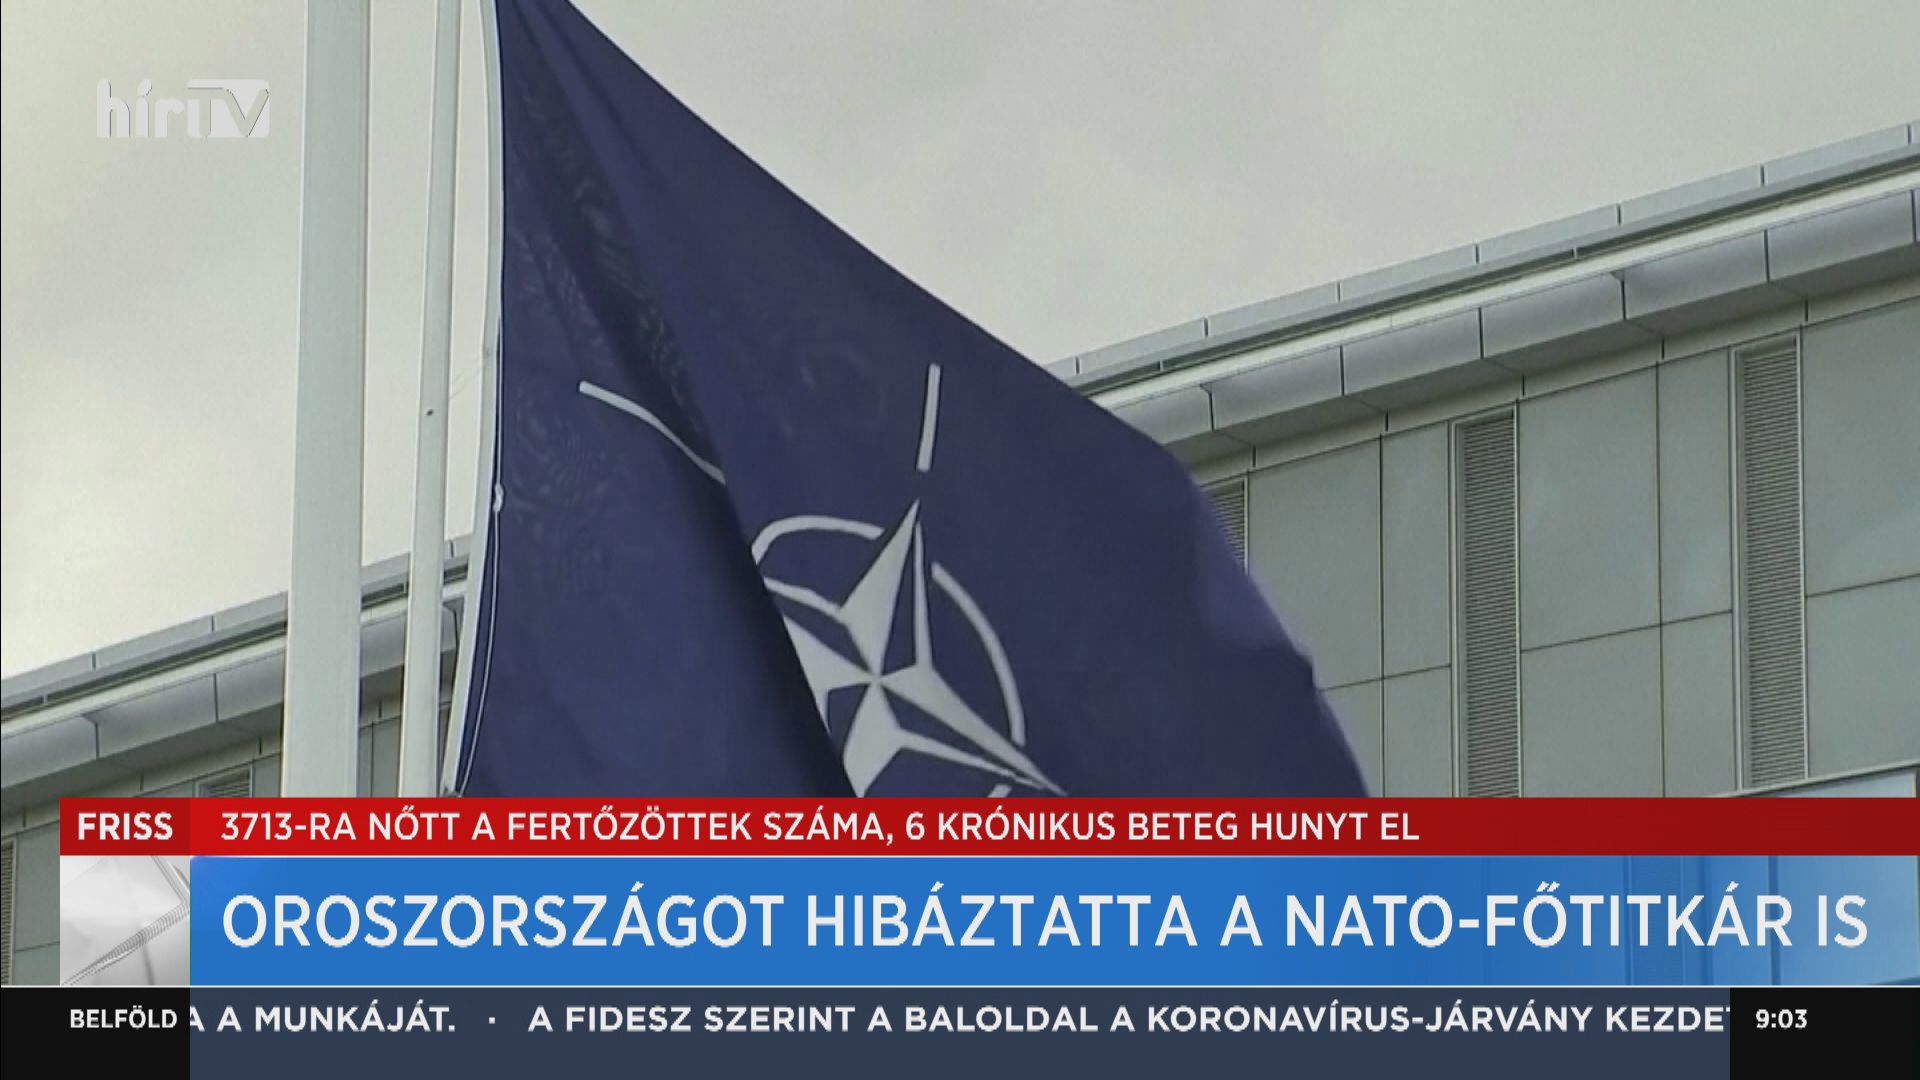 Oroszországot hibáztatta a NATO-főtitkár is